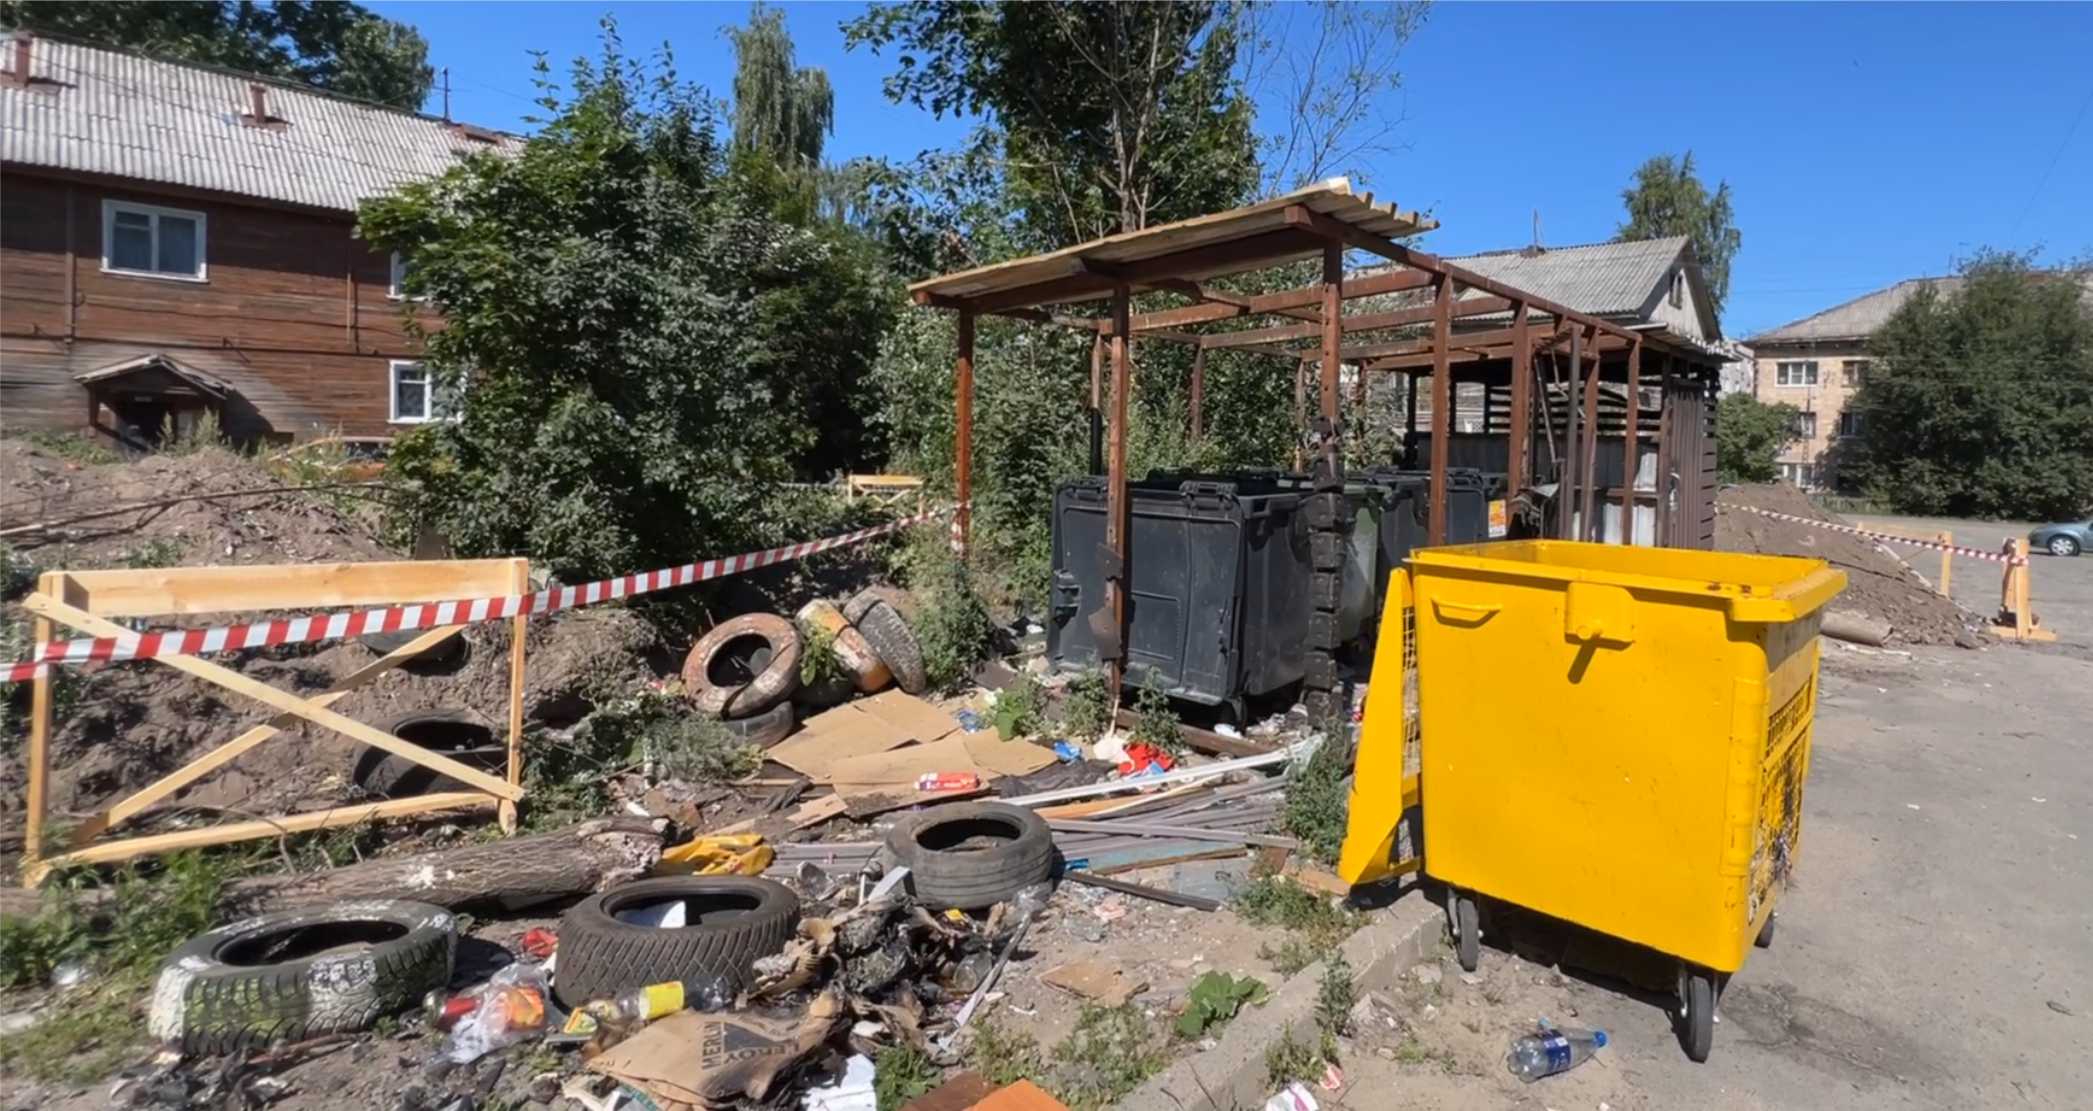 Сгоревшая мусорная площадка раздражает жителей Петрозаводска